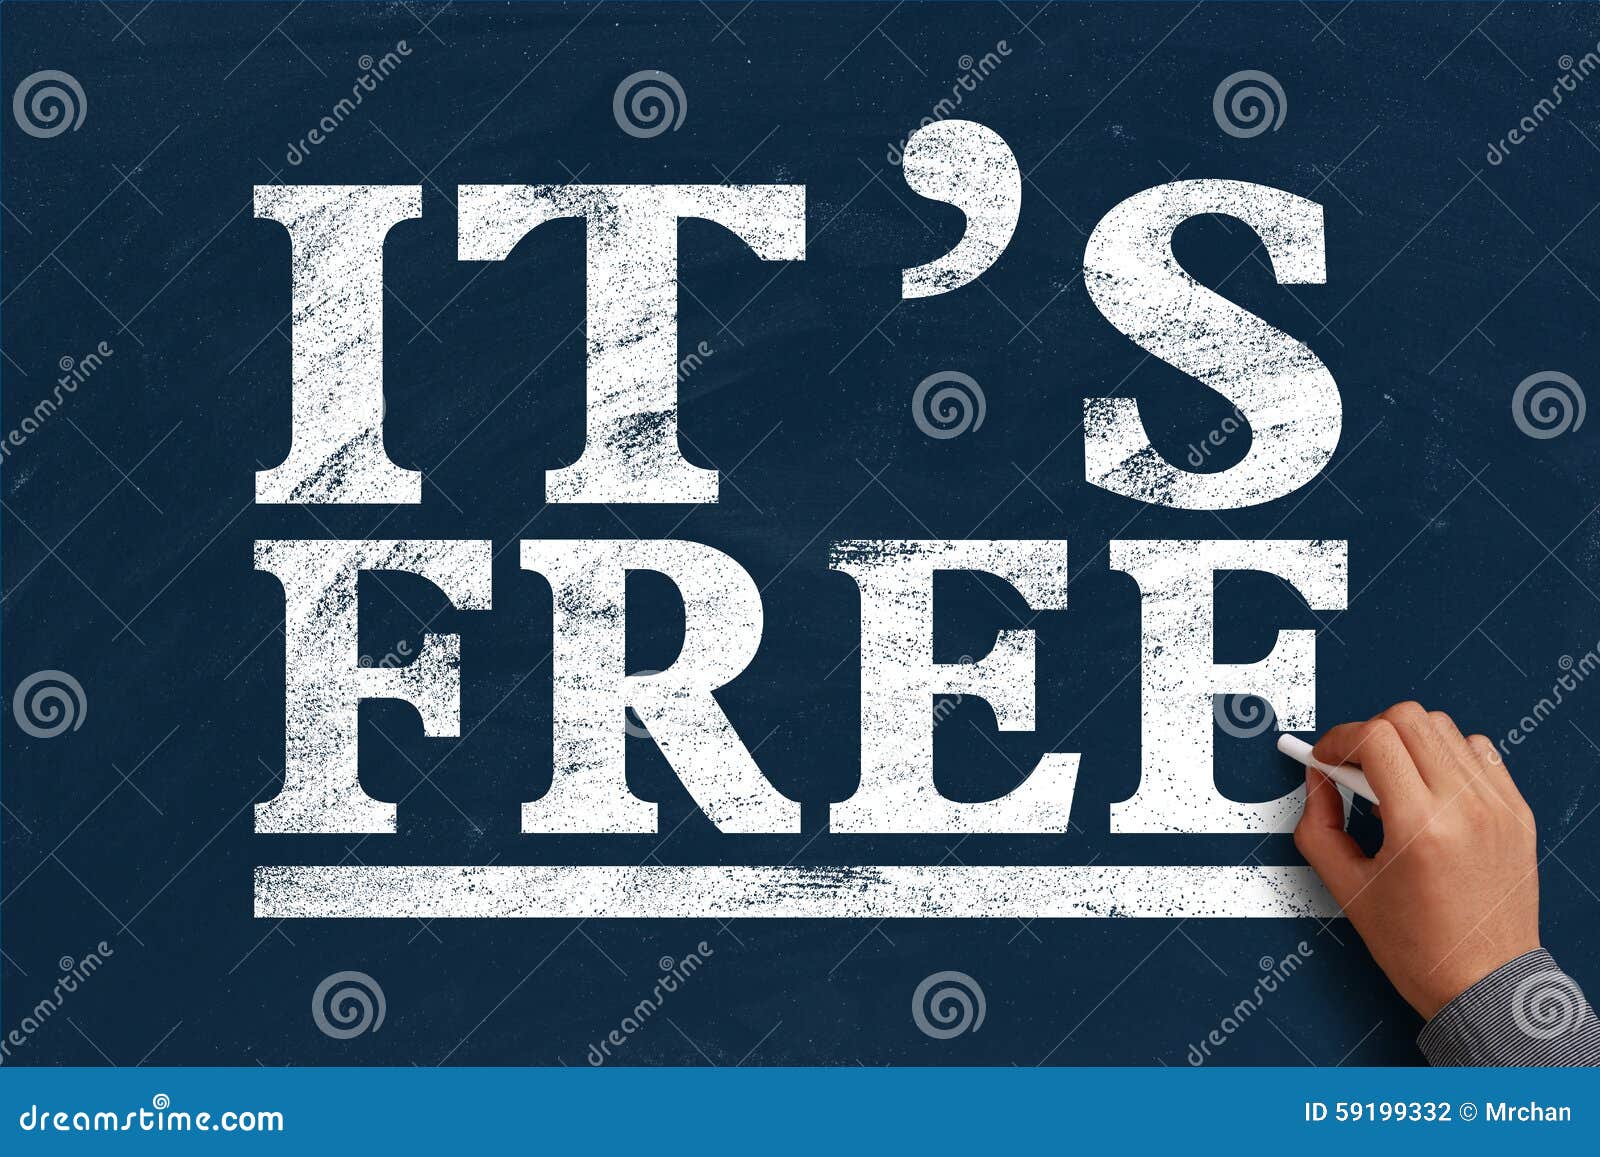 it is free